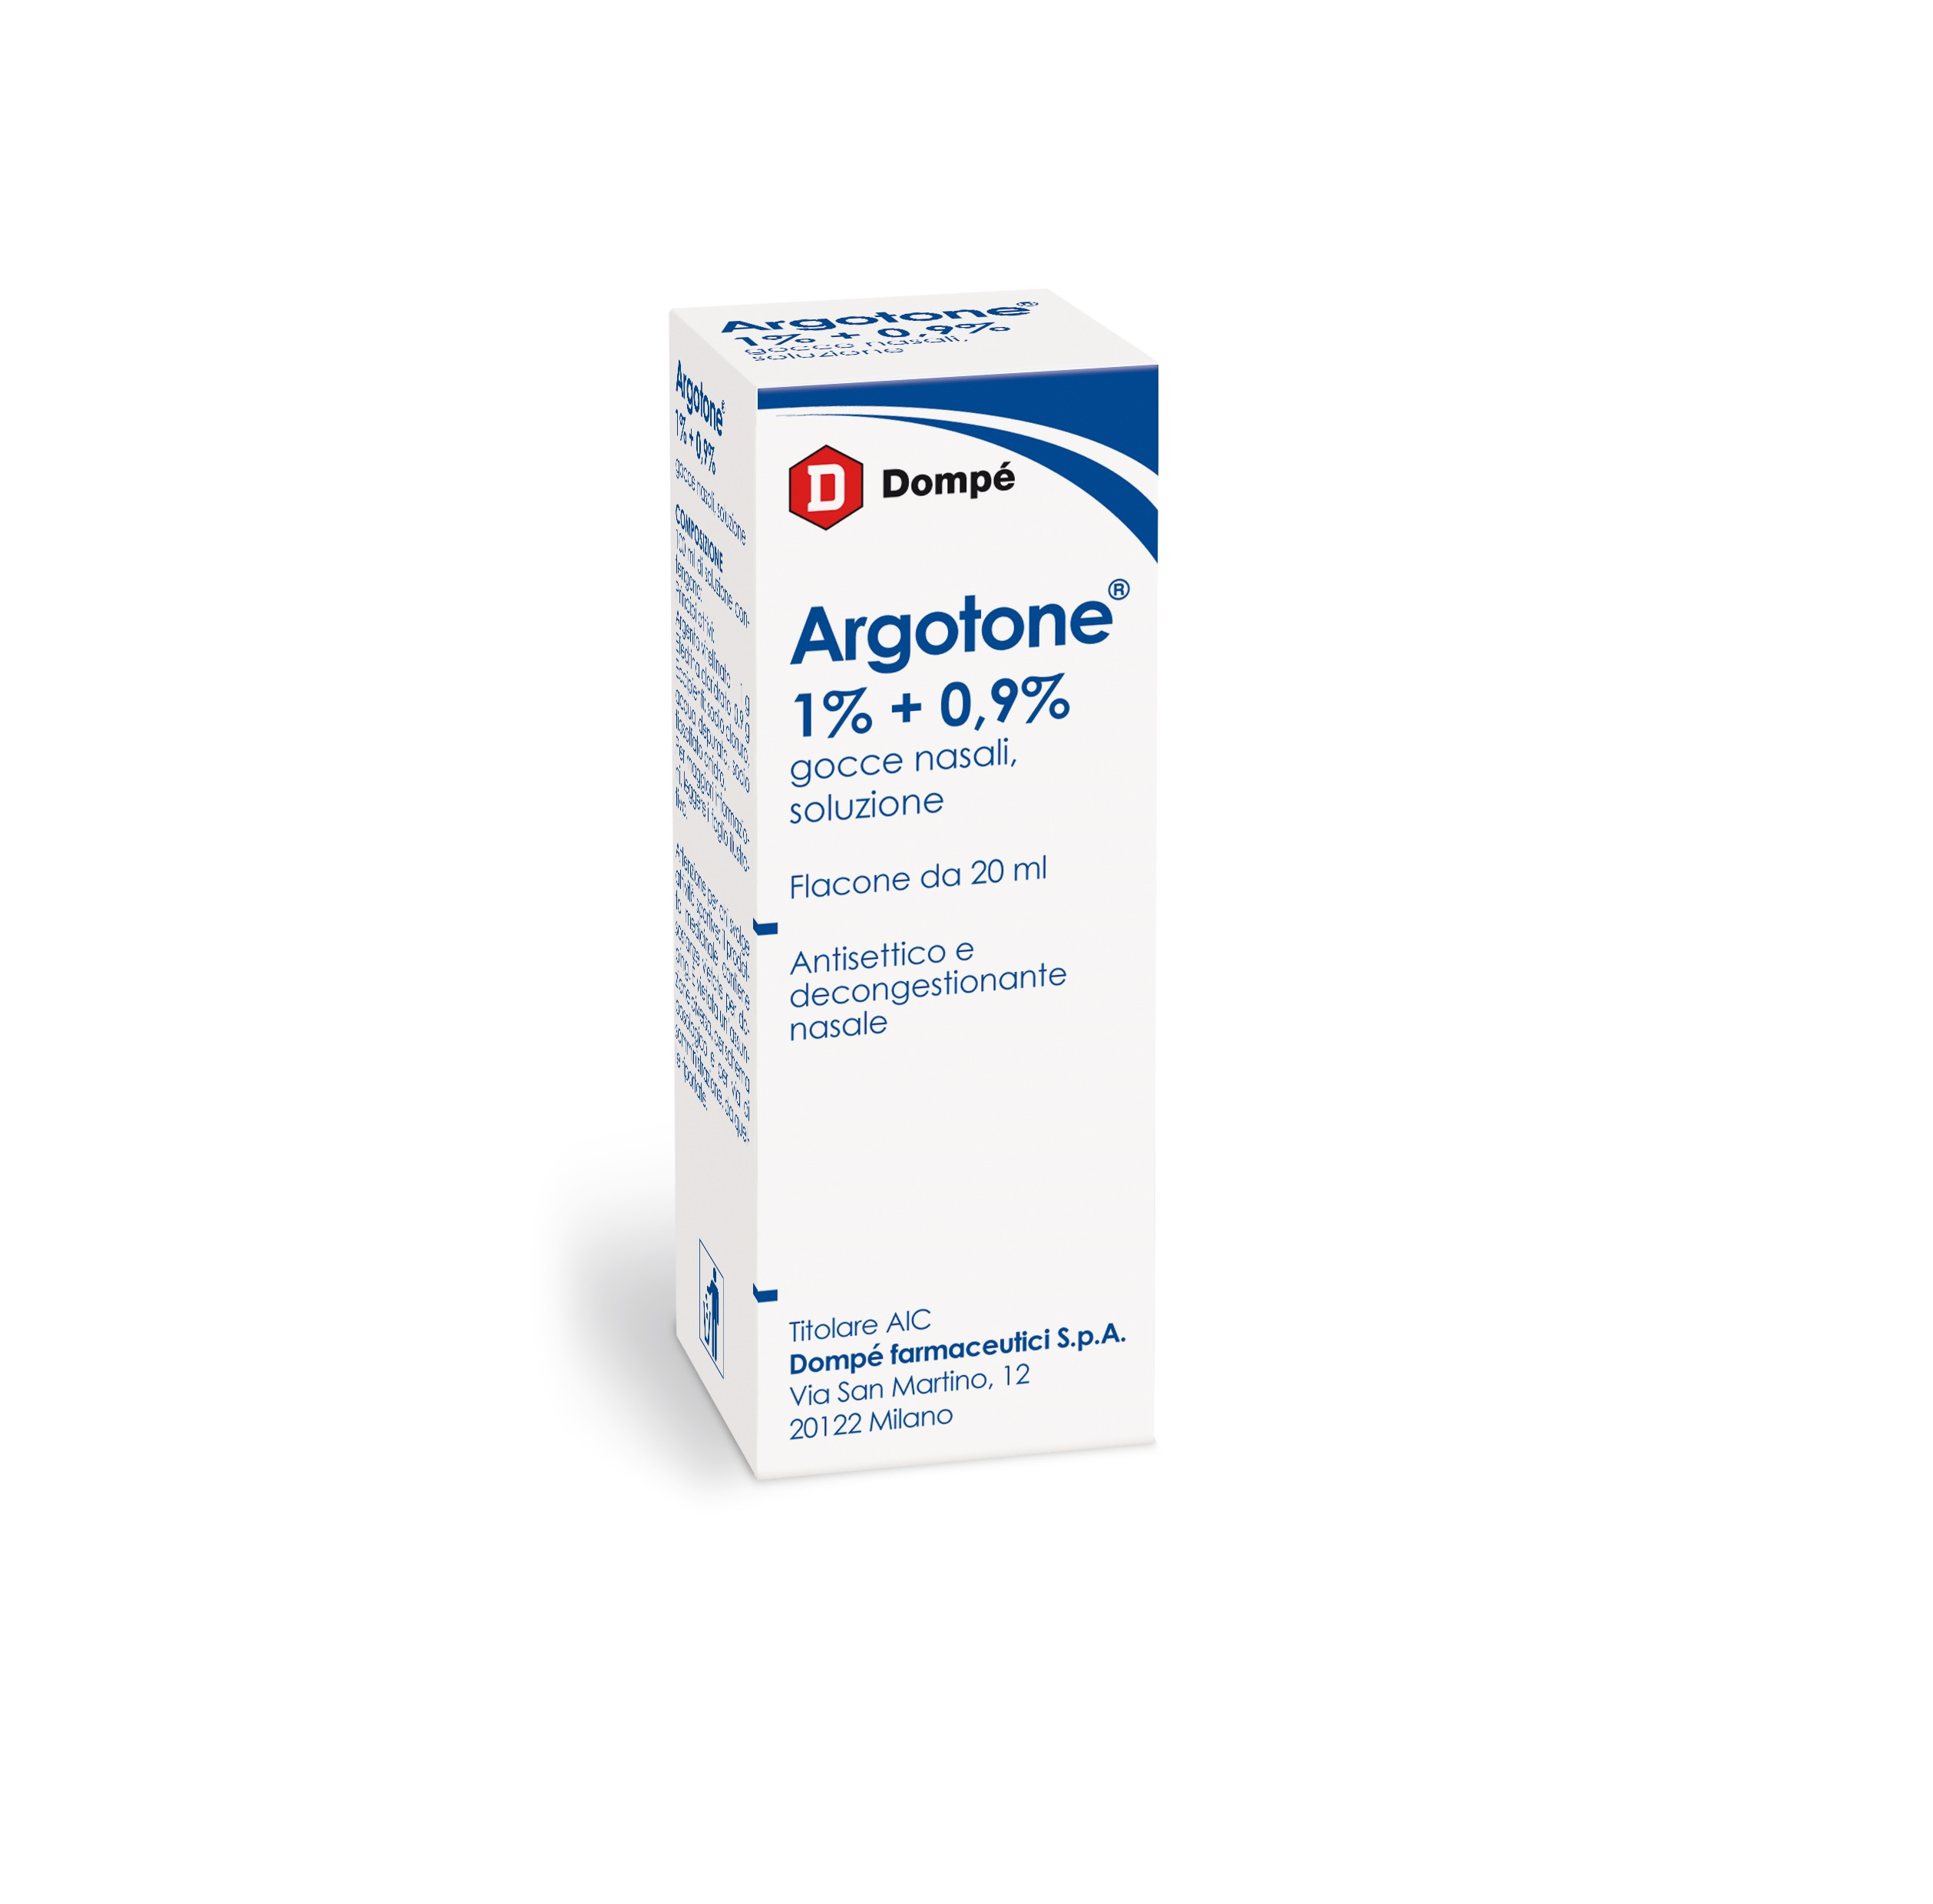 Image of Argotone Gocce Nasali 1%+0,9% Efedrina / Argento vitellinato Antisettico 20 ml